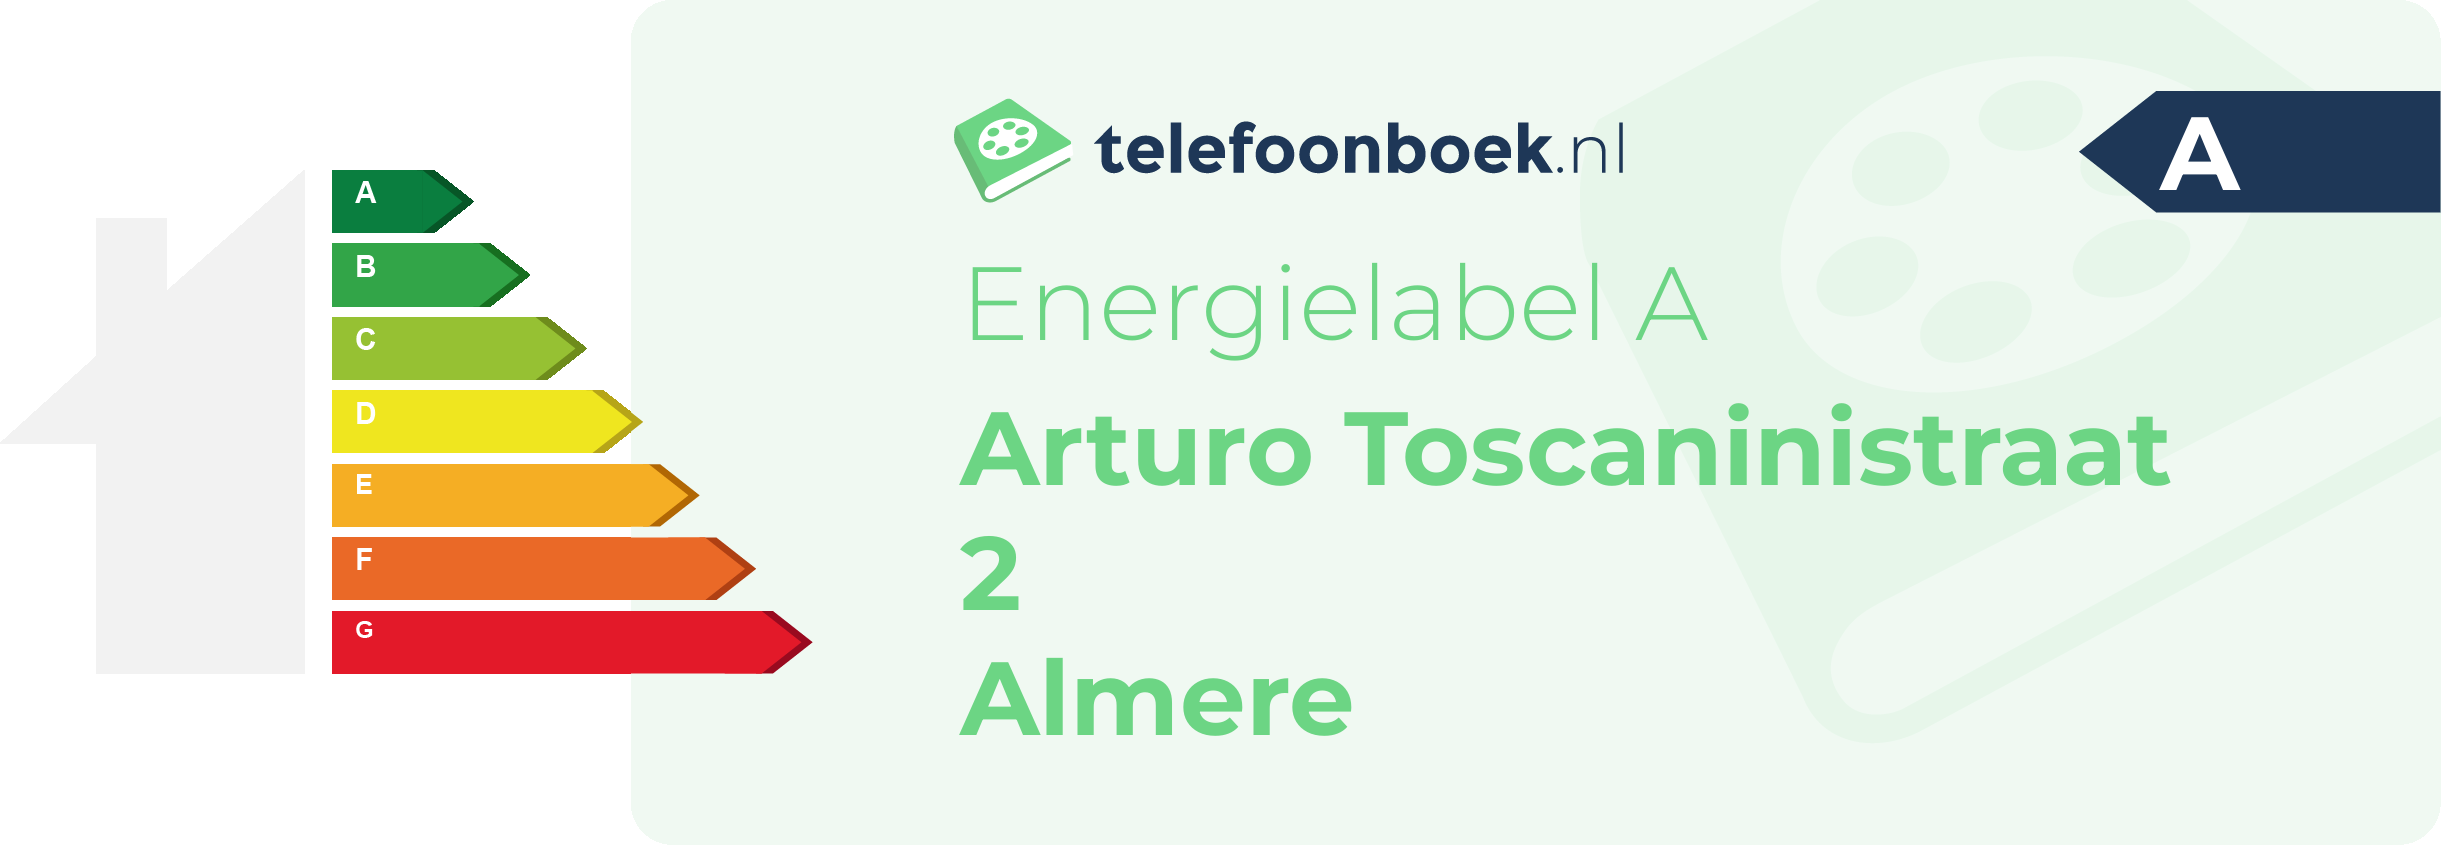 Energielabel Arturo Toscaninistraat 2 Almere